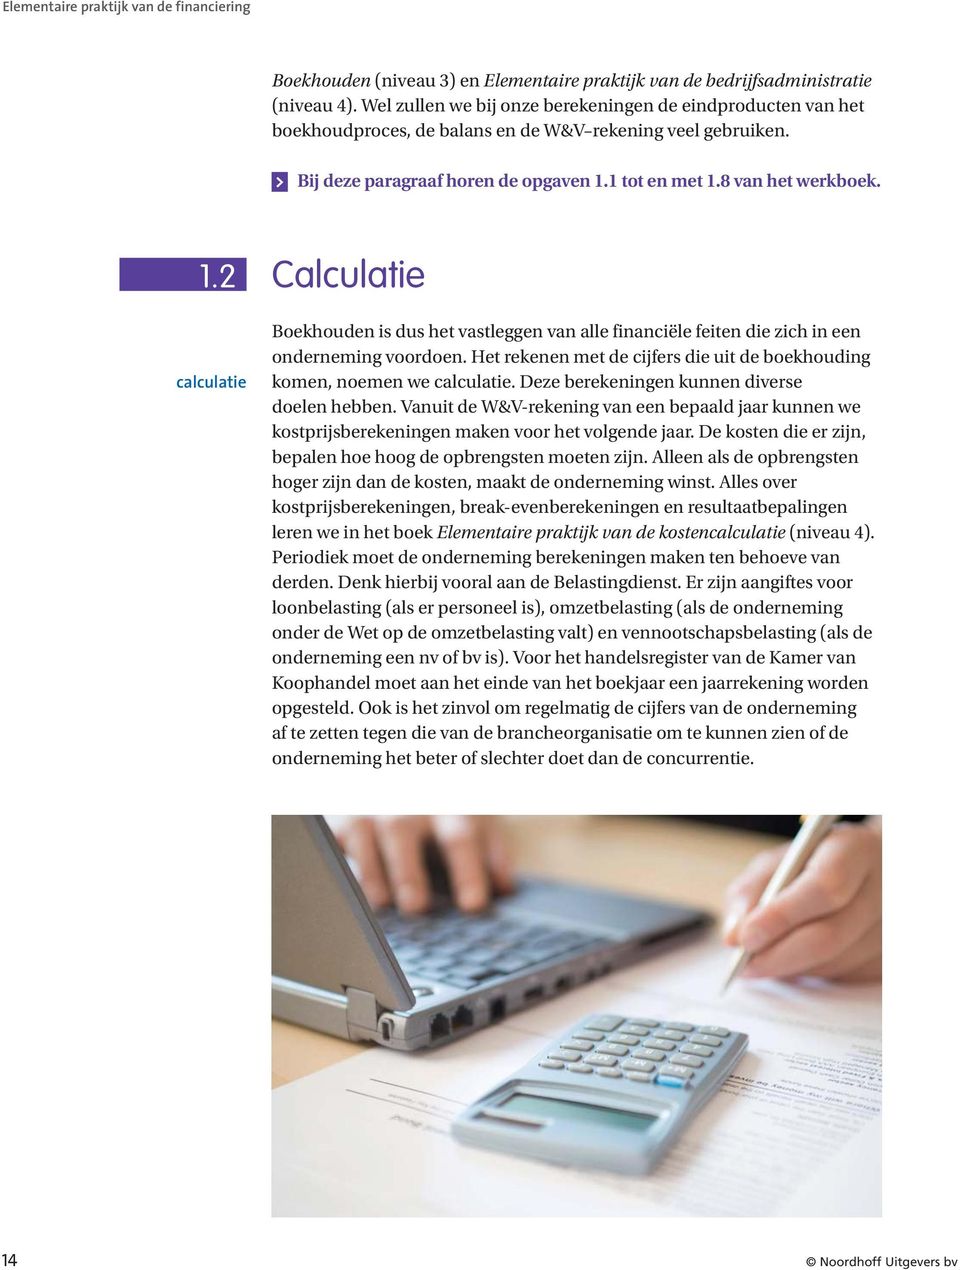 1 tot en met 1.8 van het werkboek. 1.2 calculatie Calculatie Boekhouden is dus het vastleggen van alle financiële feiten die zich in een onderneming voordoen.